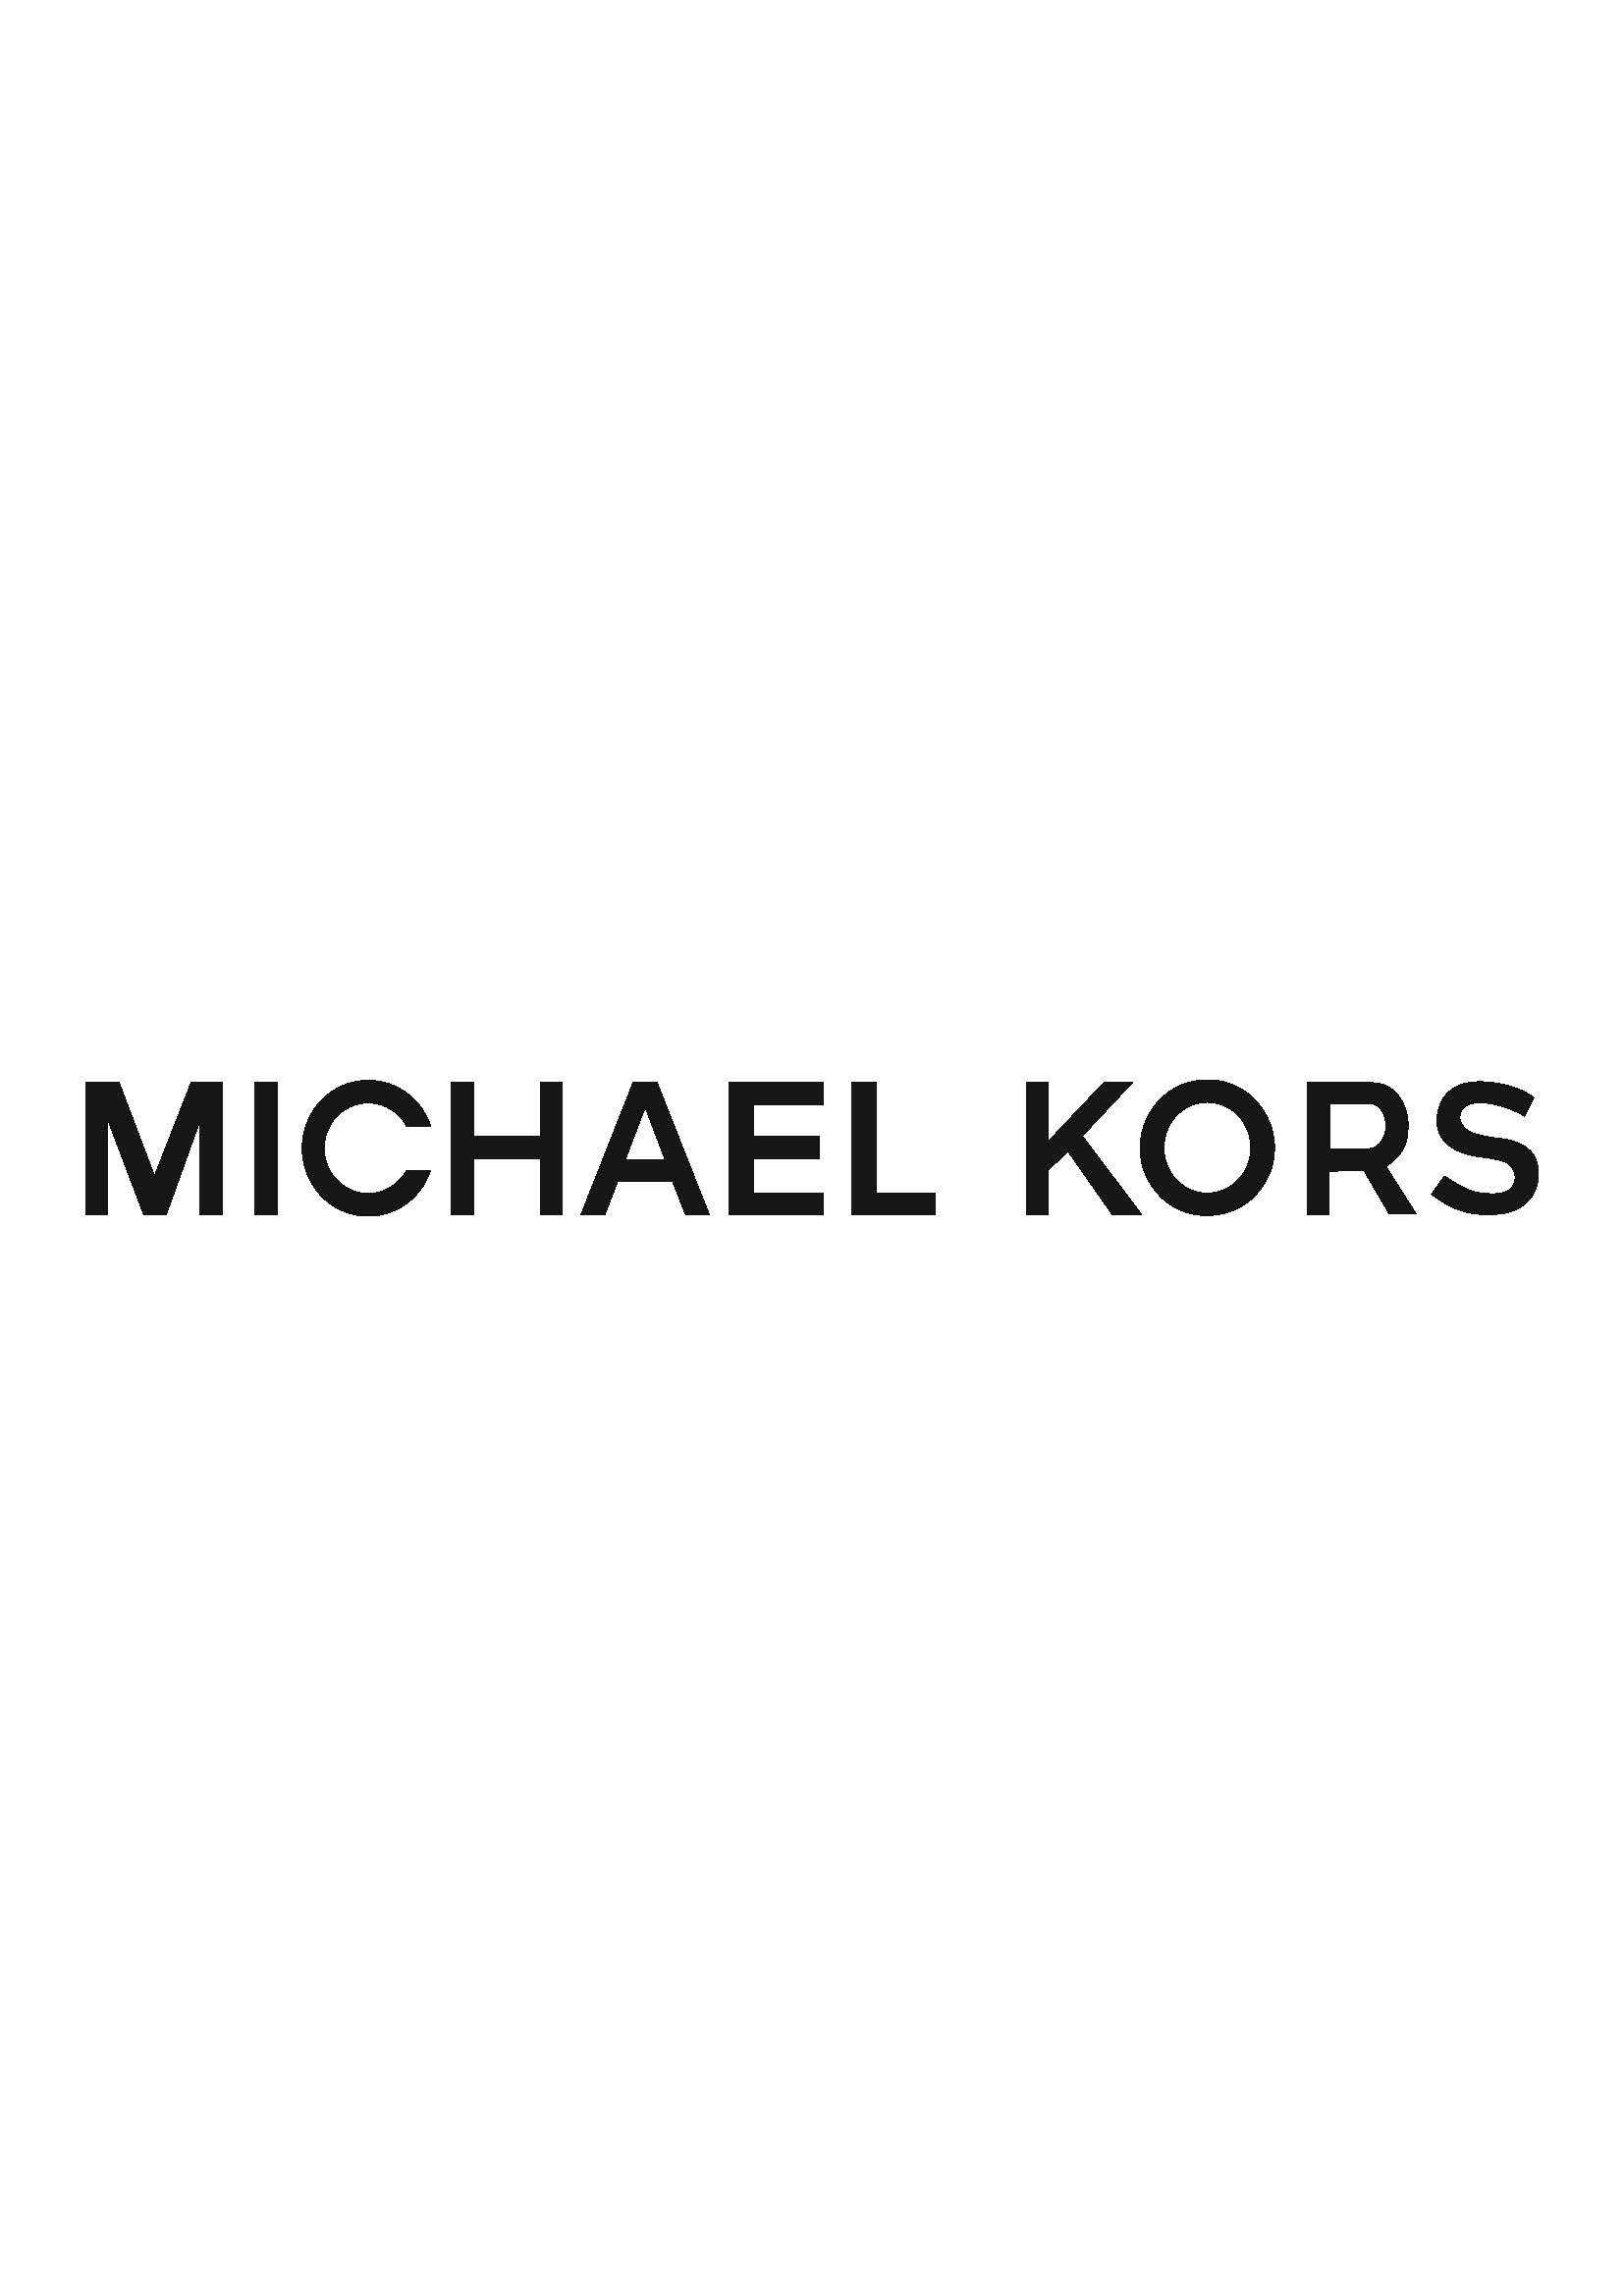 Michael Kors Vouchers Codes